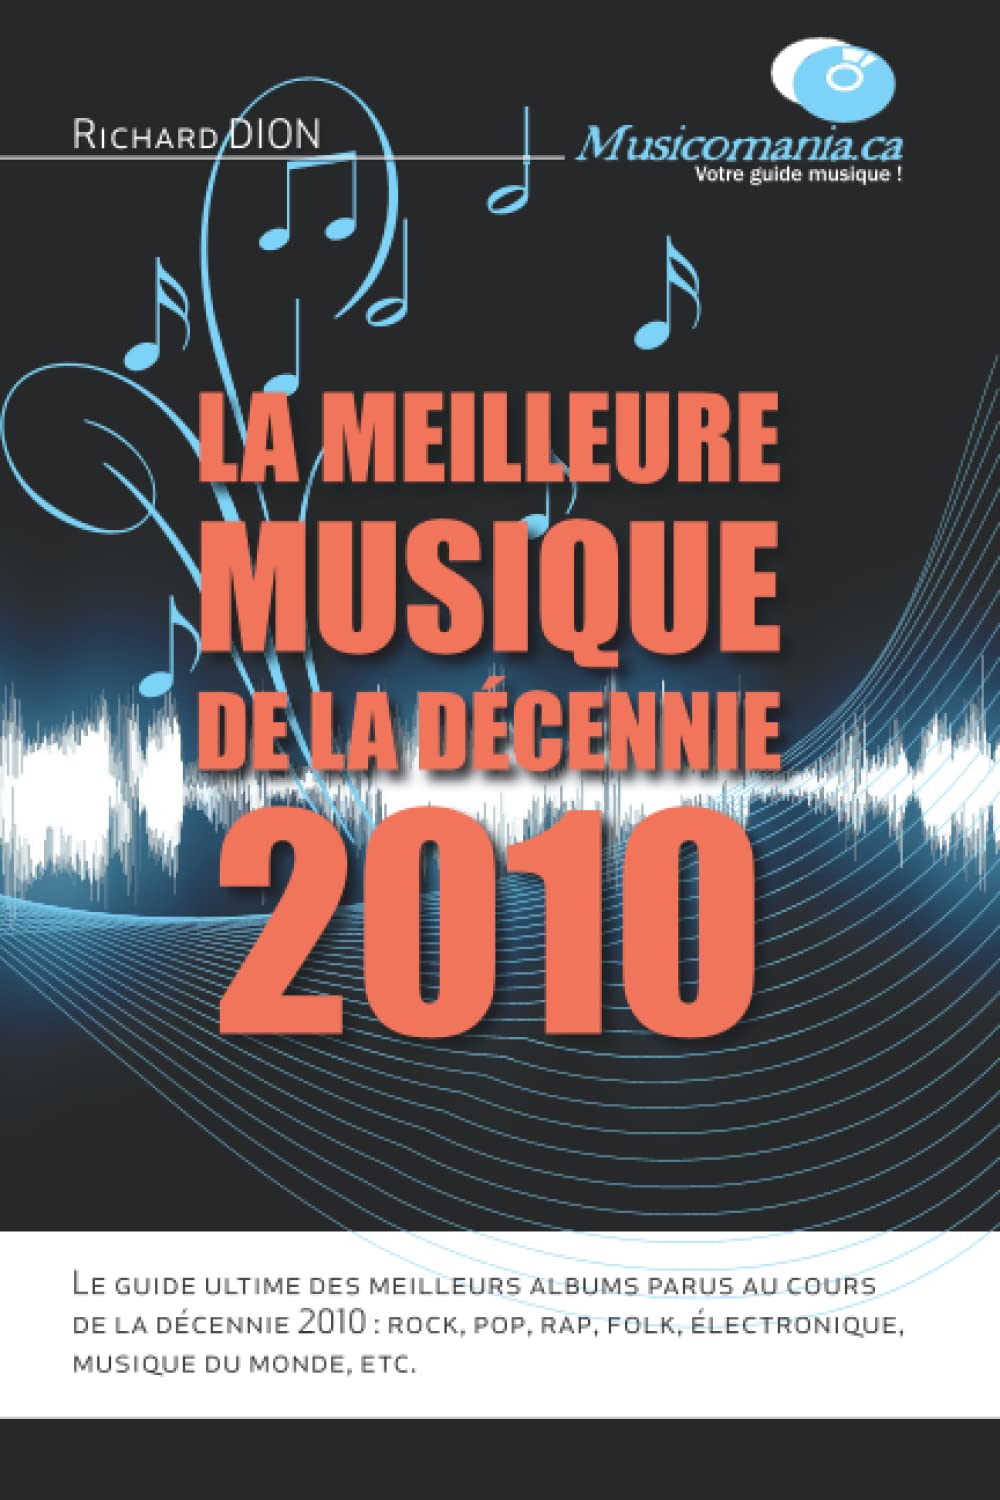 Richard Dion - La meilleure musique de la décennie 2010